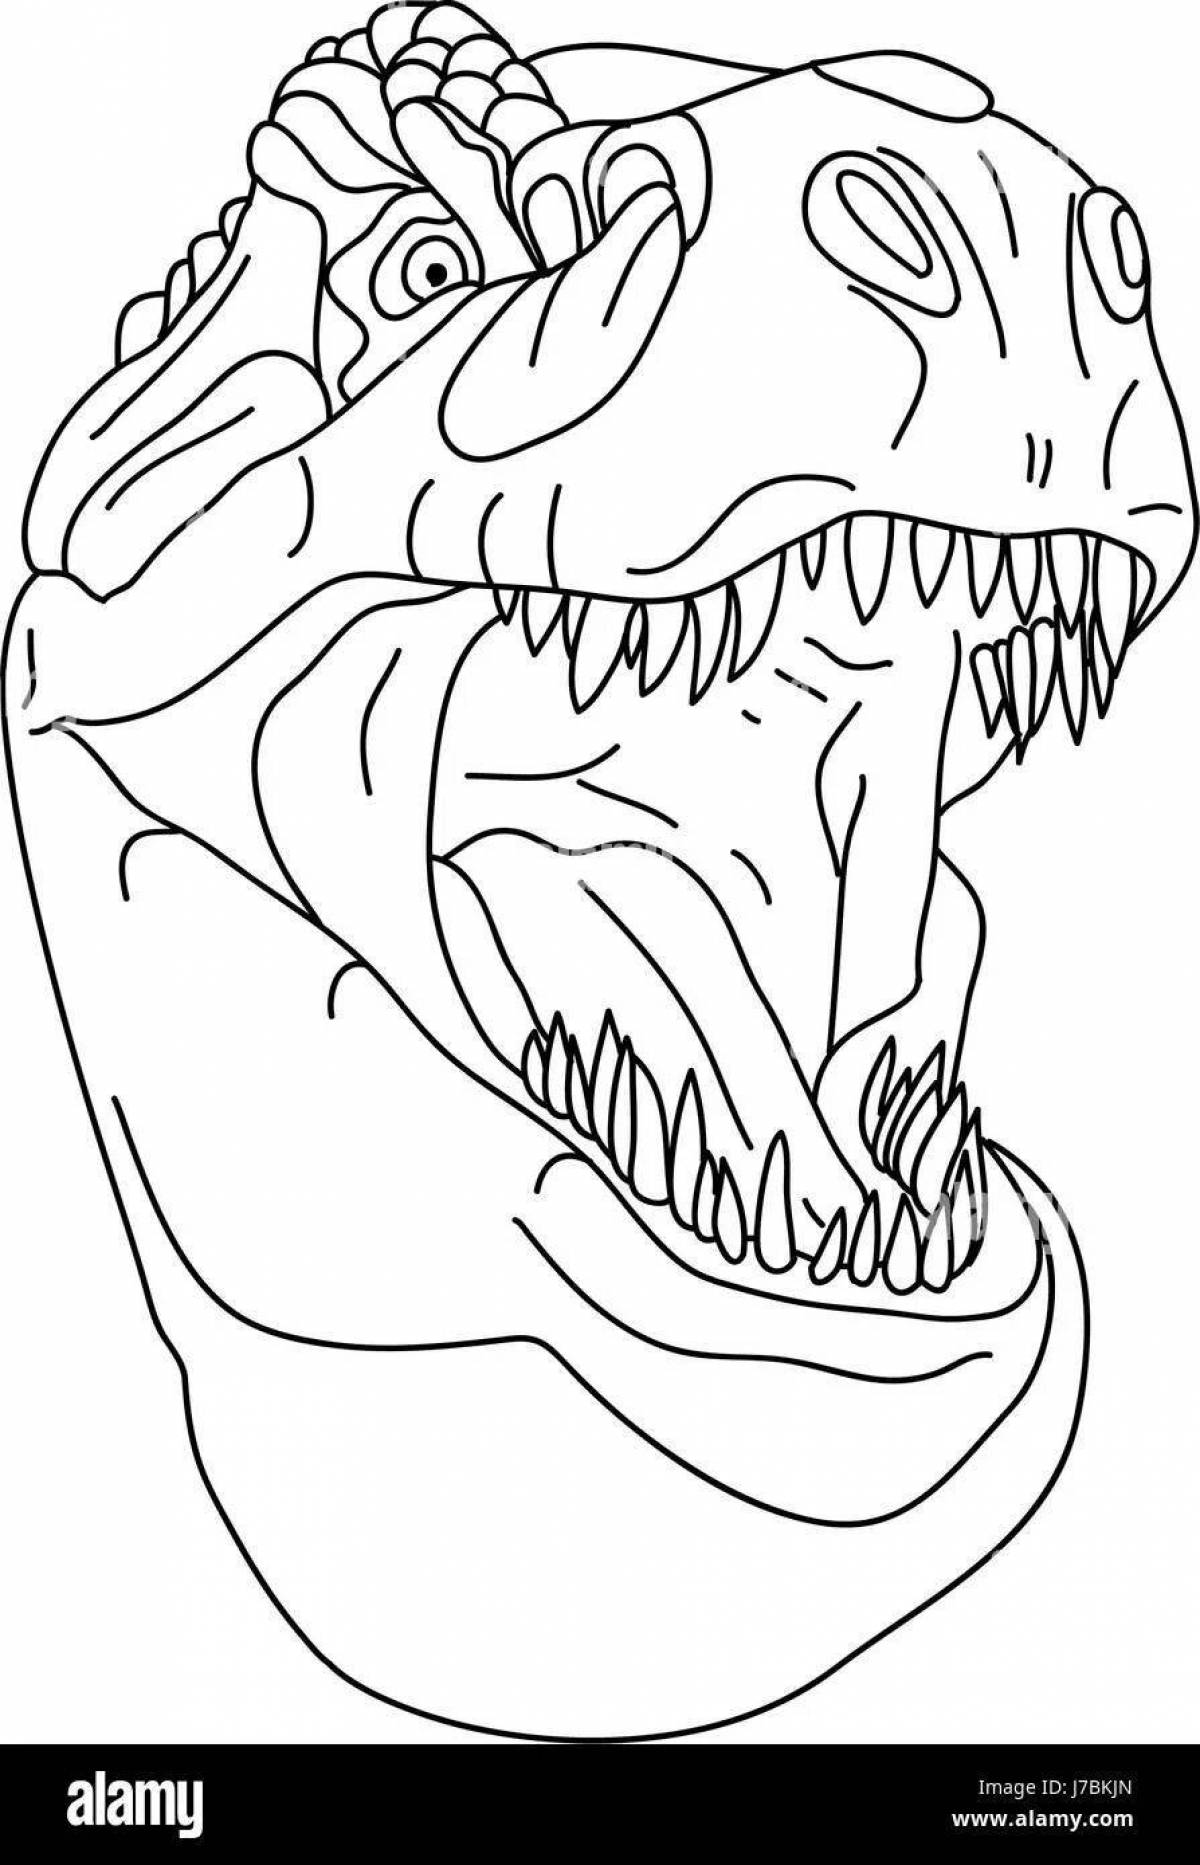 Раскраска потрясающая маска динозавра